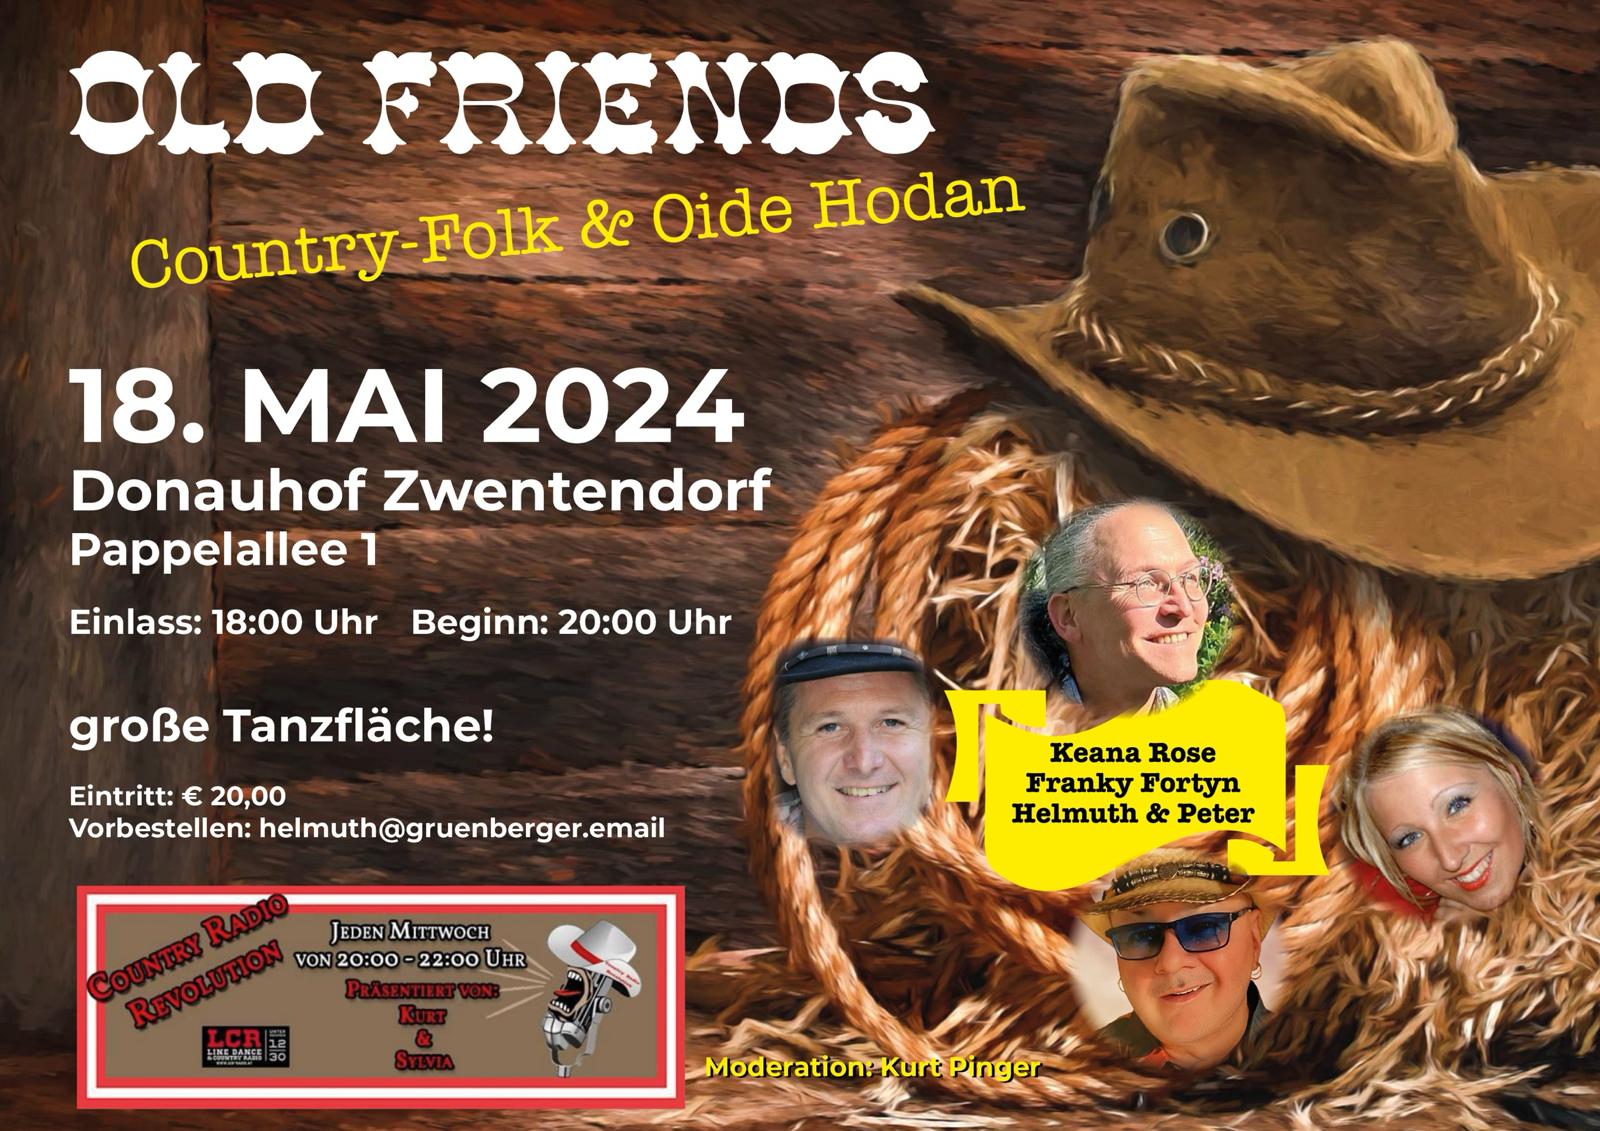 18.05.2024 - Old Friends - Country-Folk & Oide Hodan